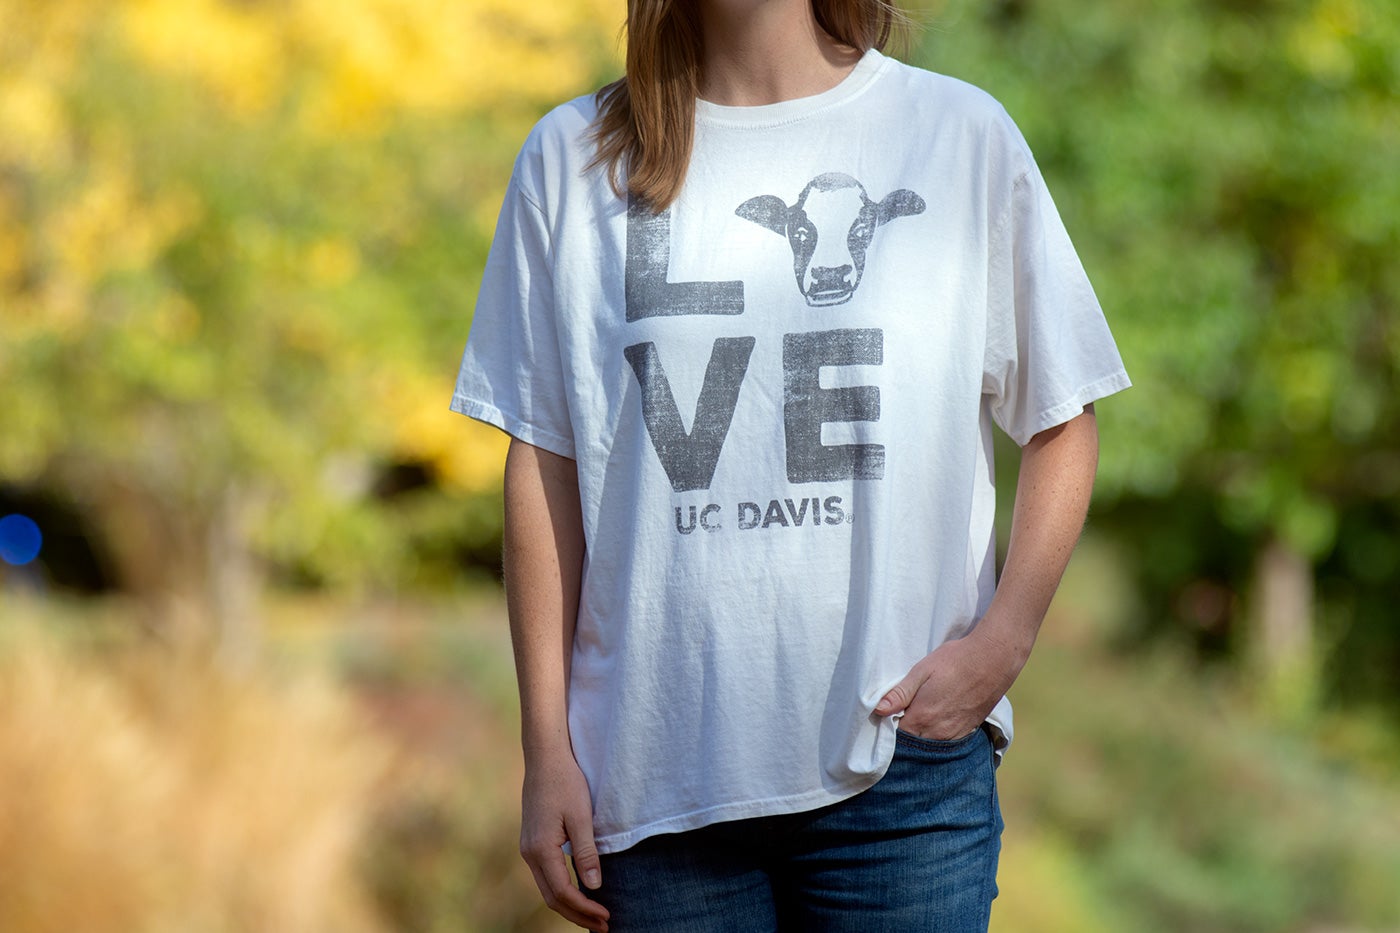 A shirt reads "LOVE"